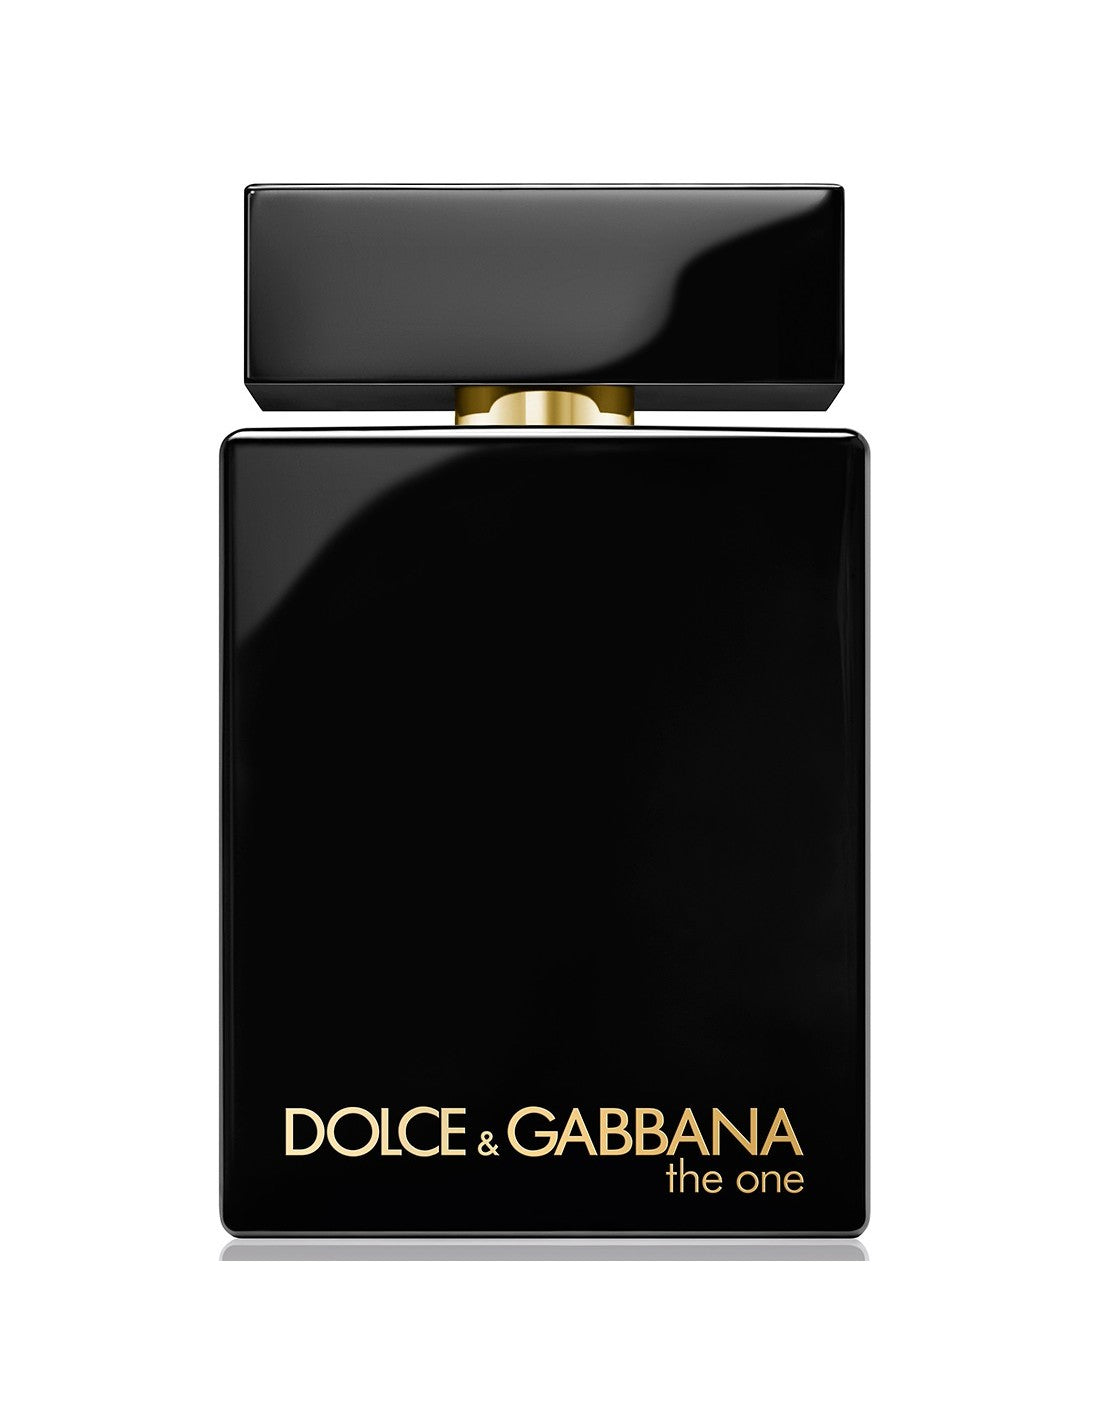 Dolce and Gabbana The One For Men Edp Интенсивный спрей 100 мл